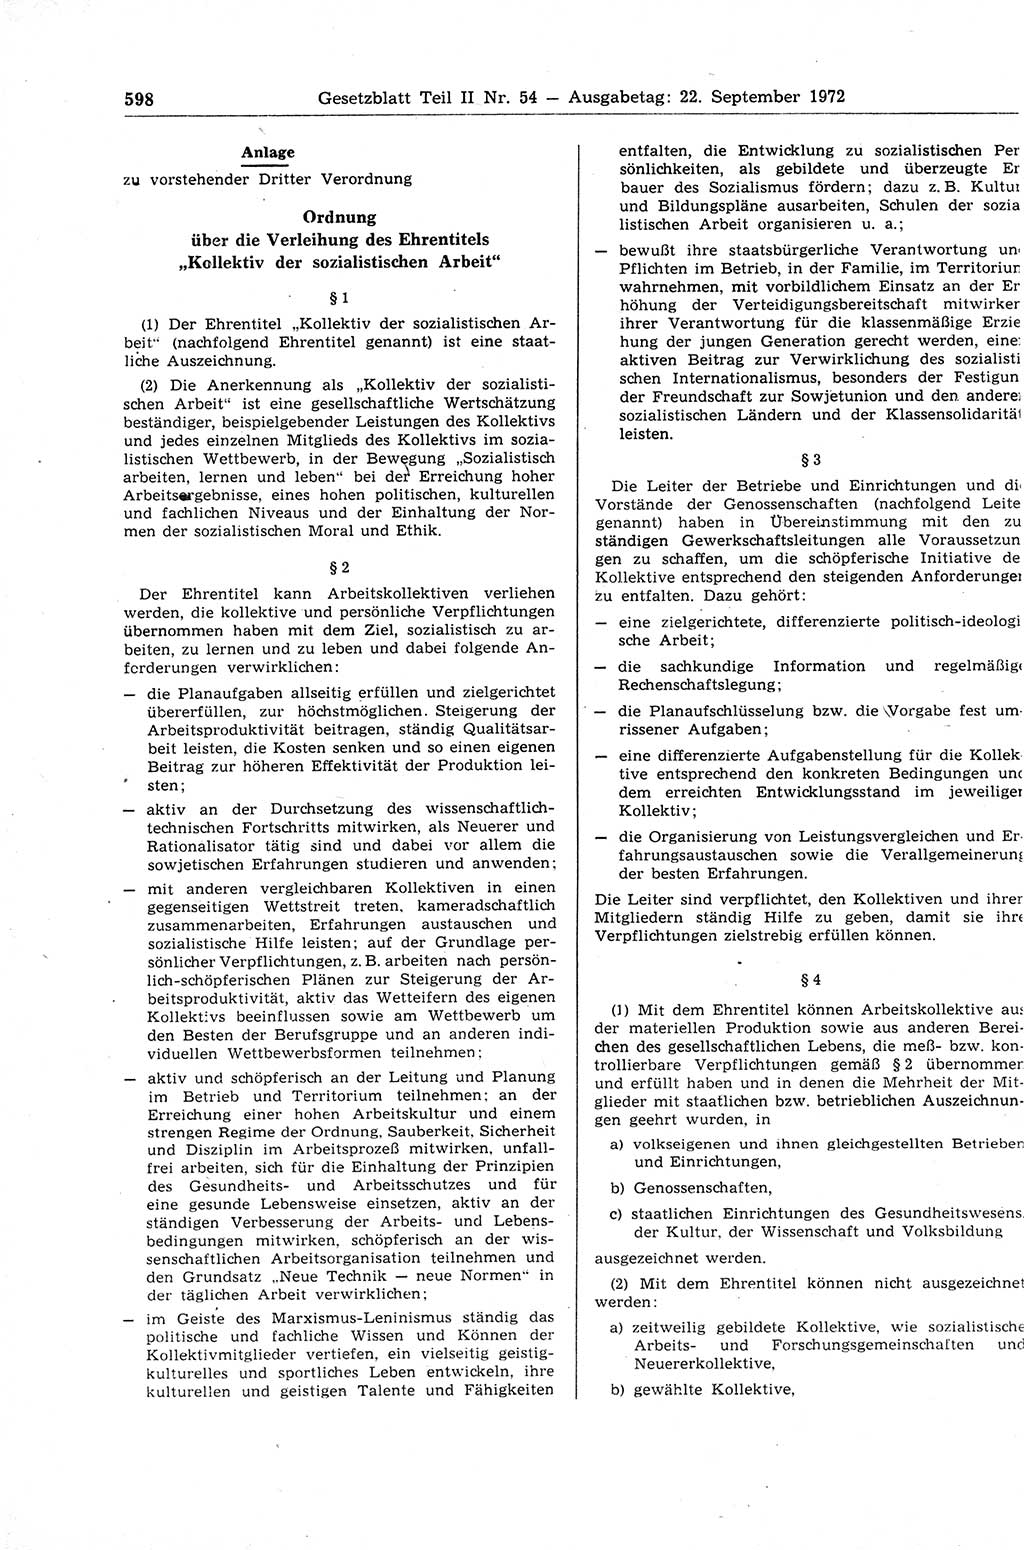 Gesetzblatt (GBl.) der Deutschen Demokratischen Republik (DDR) Teil ⅠⅠ 1972, Seite 598 (GBl. DDR ⅠⅠ 1972, S. 598)